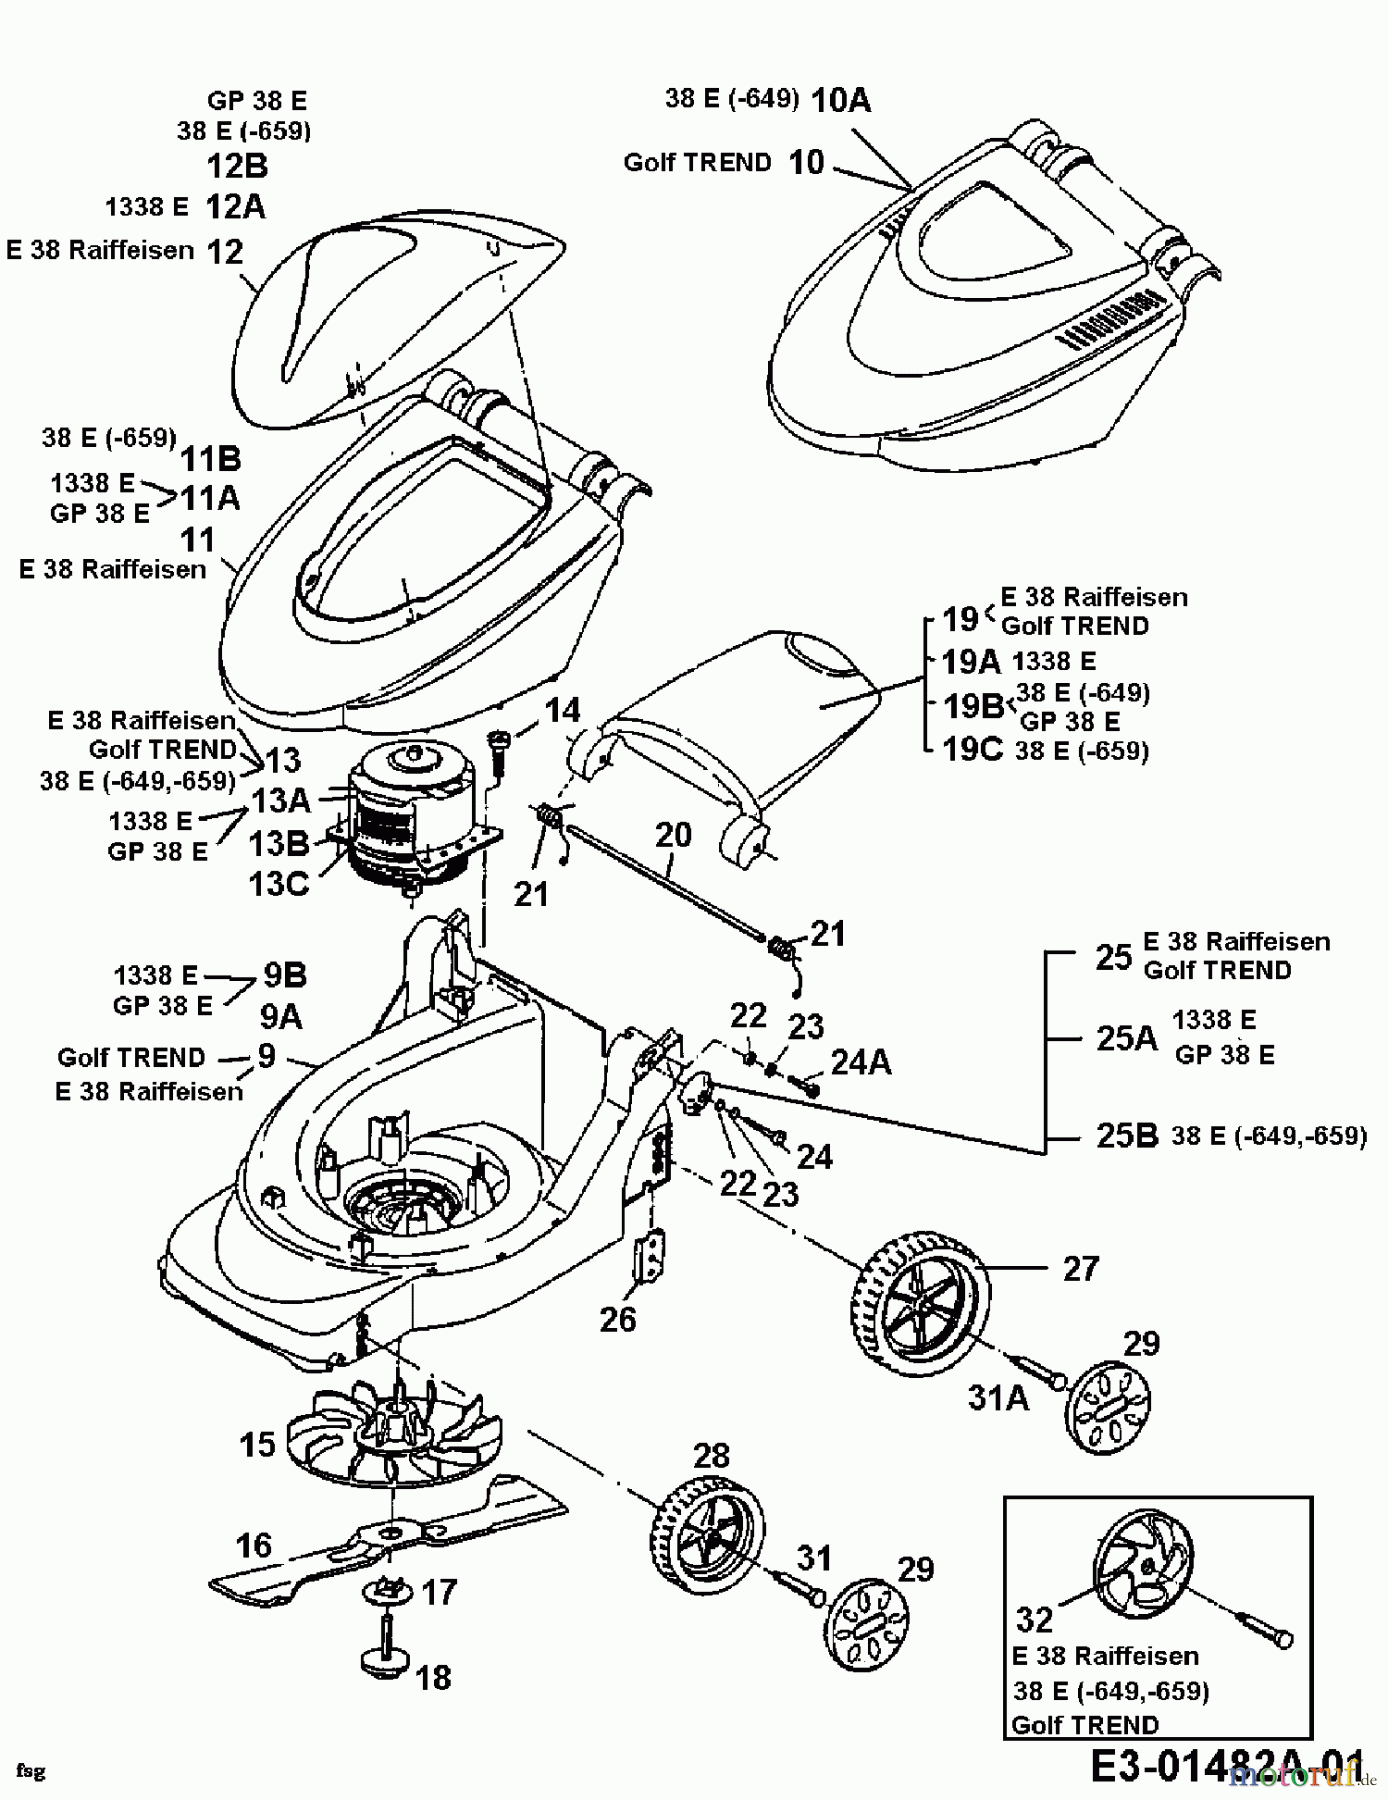  Raiffeisen Elektromäher E 38 18B-G0E-628  (2000) Grundgerät